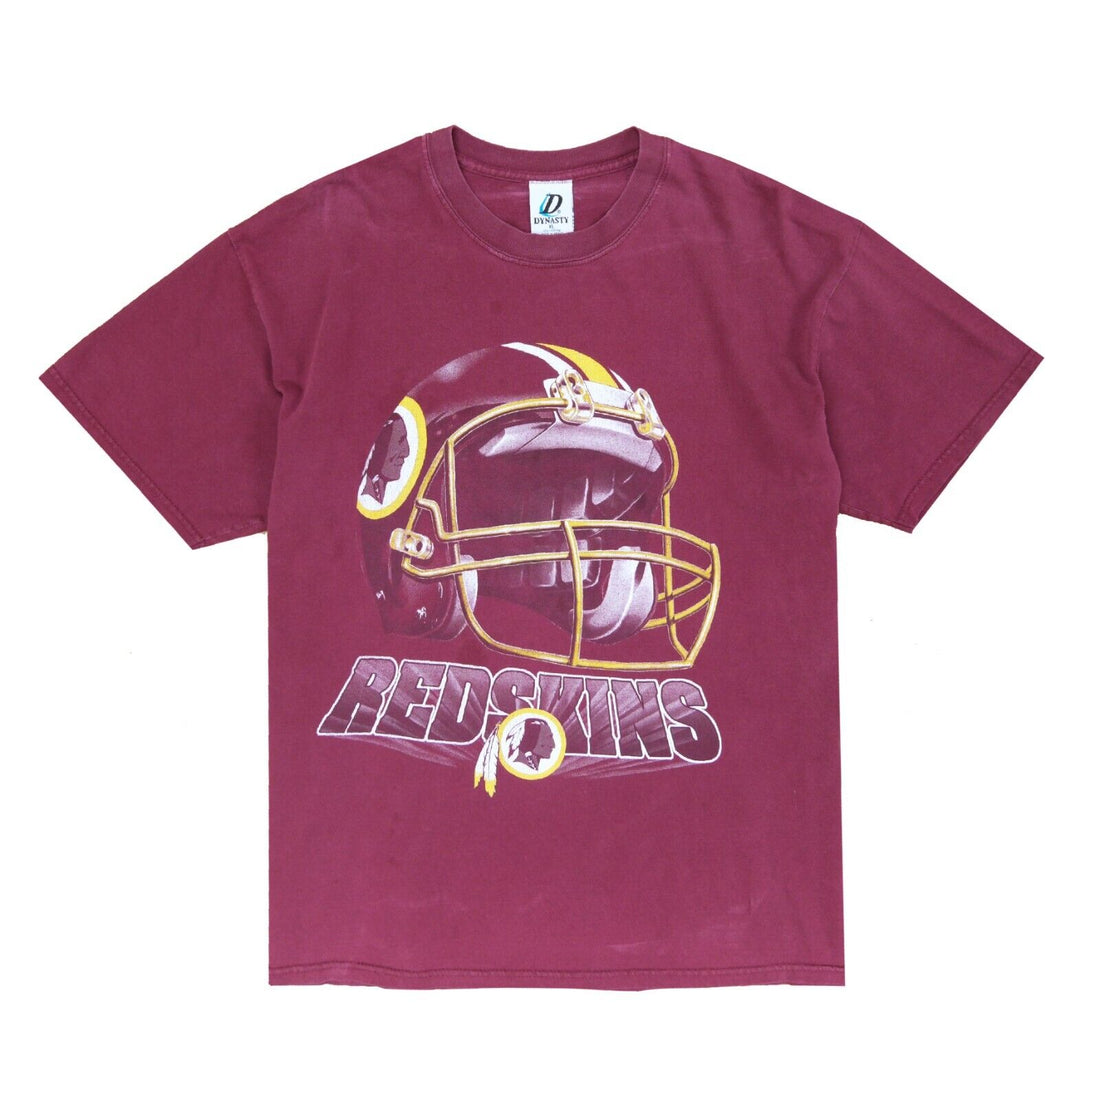 Vintage Washington Redskins Helmet T-Shirt Size XL Red NFL